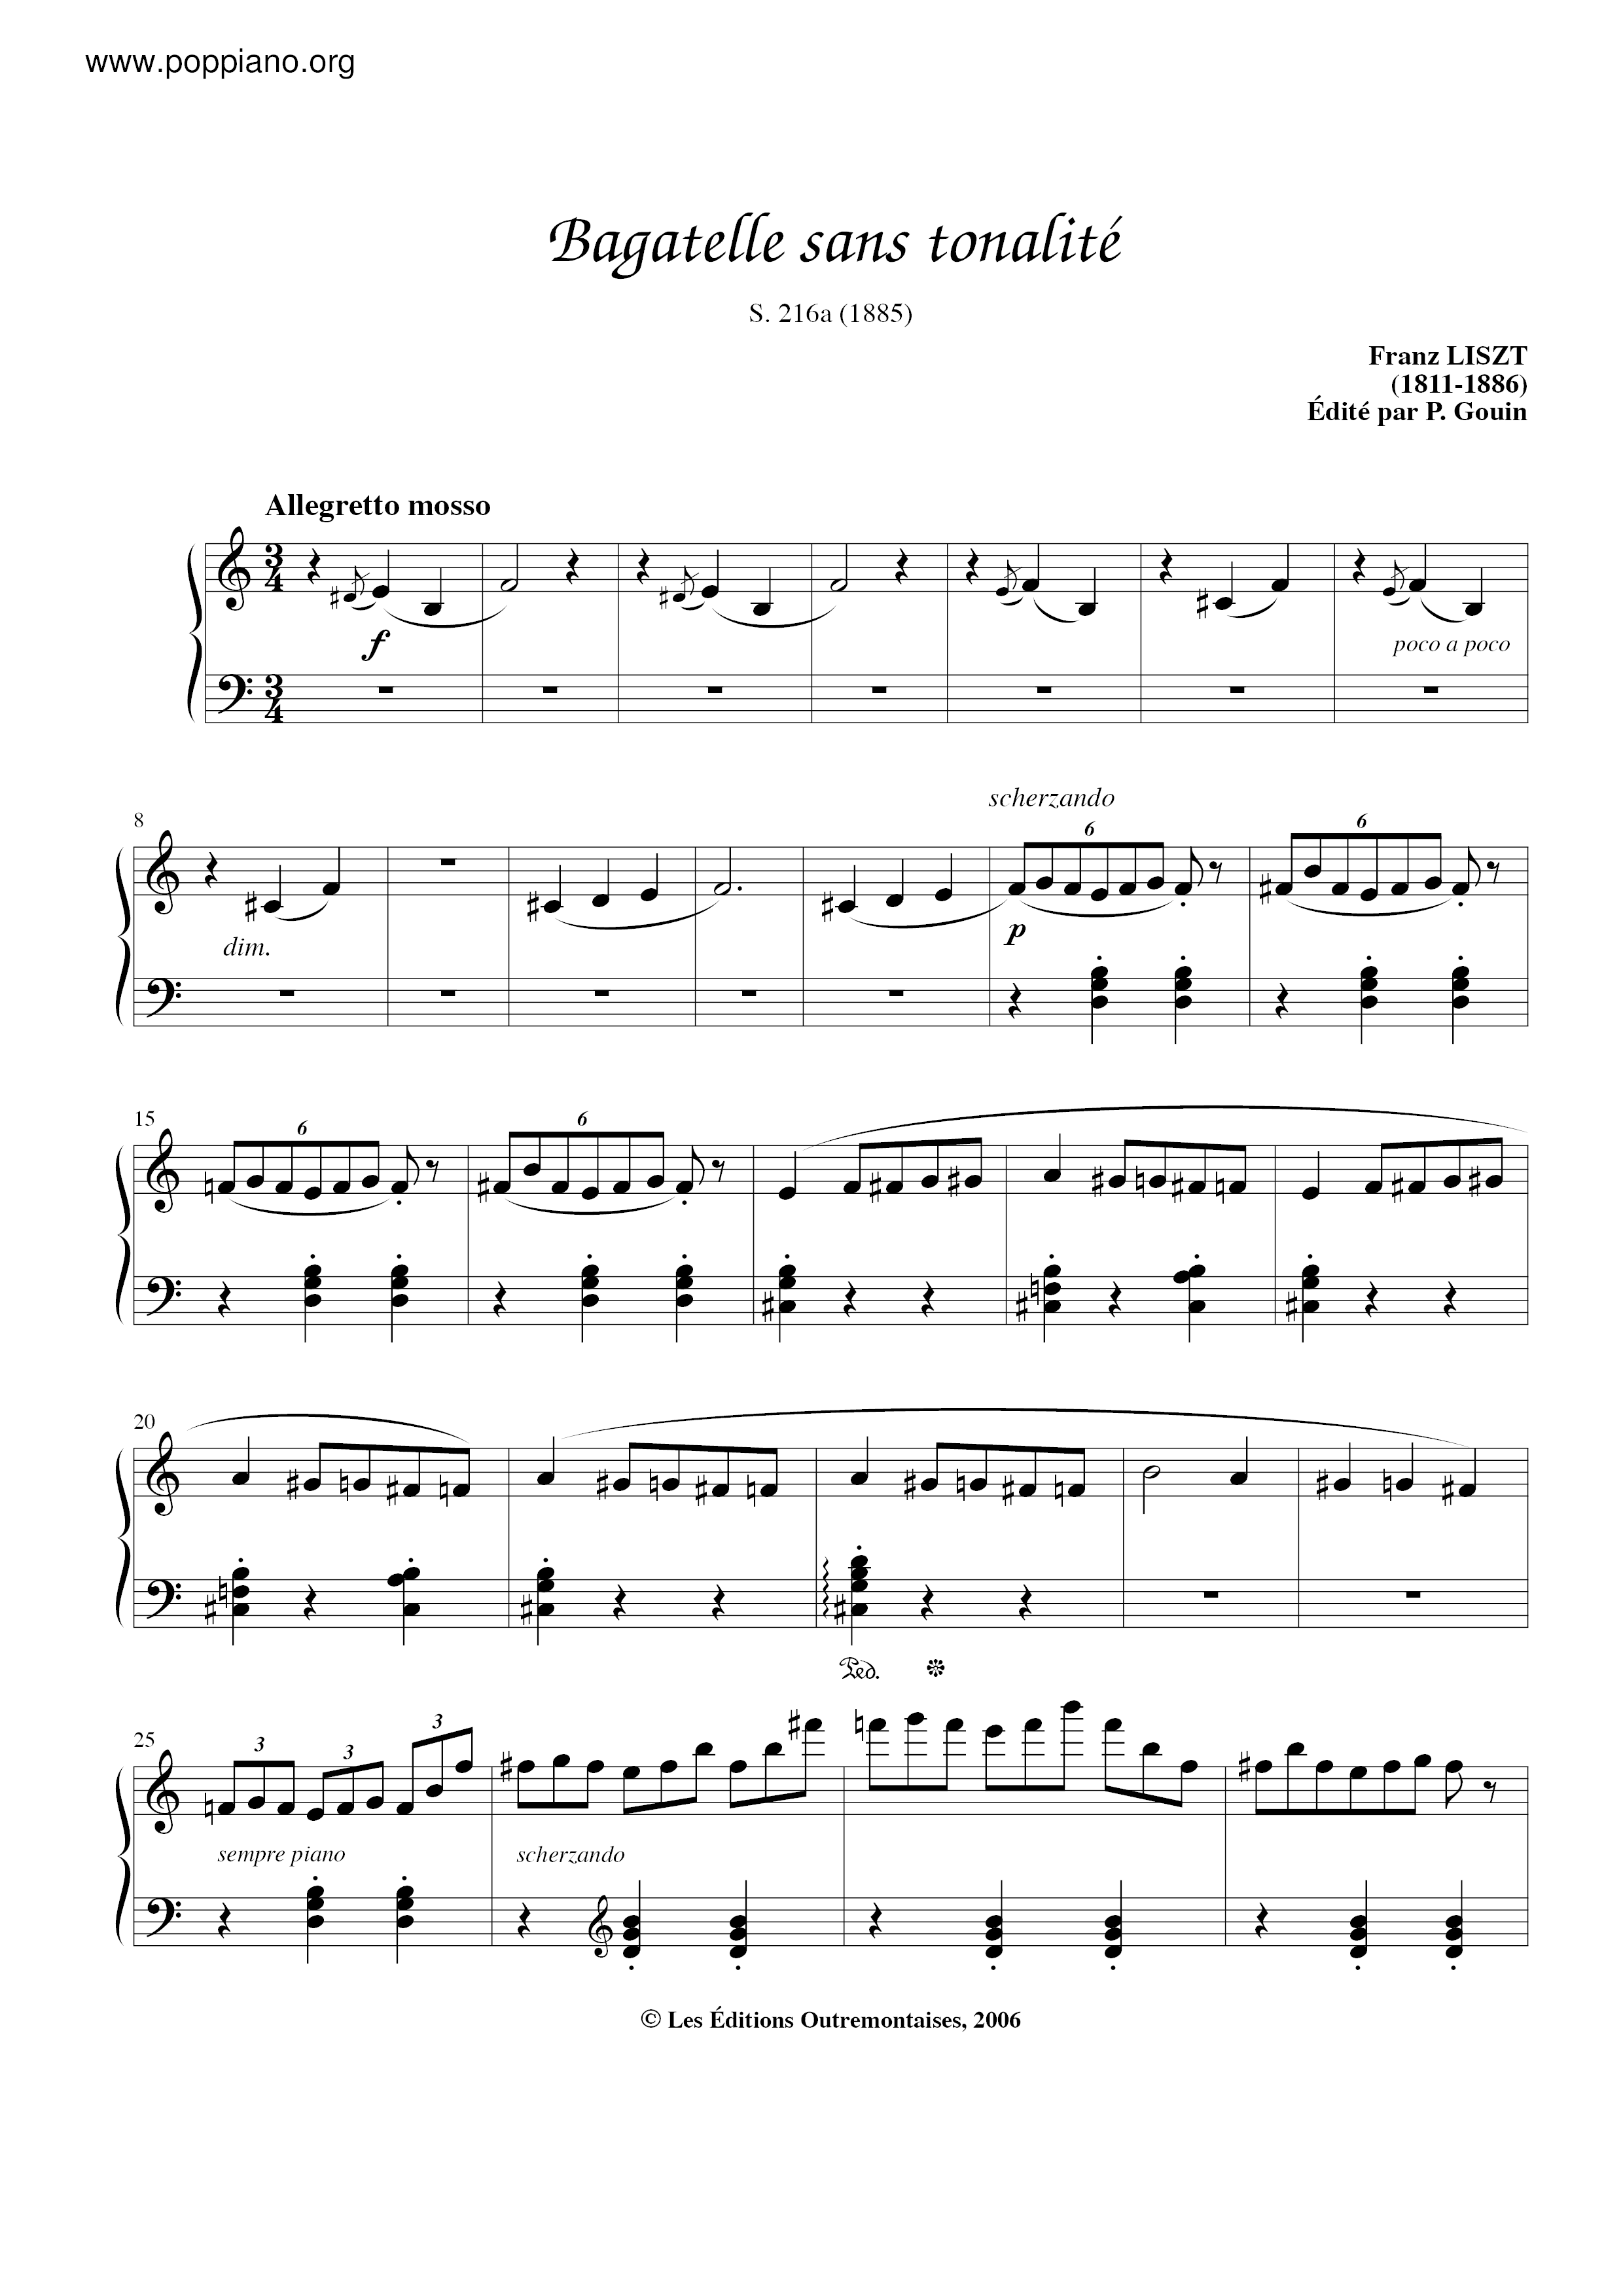 Bagatelle sans tonalite, S.216a Score